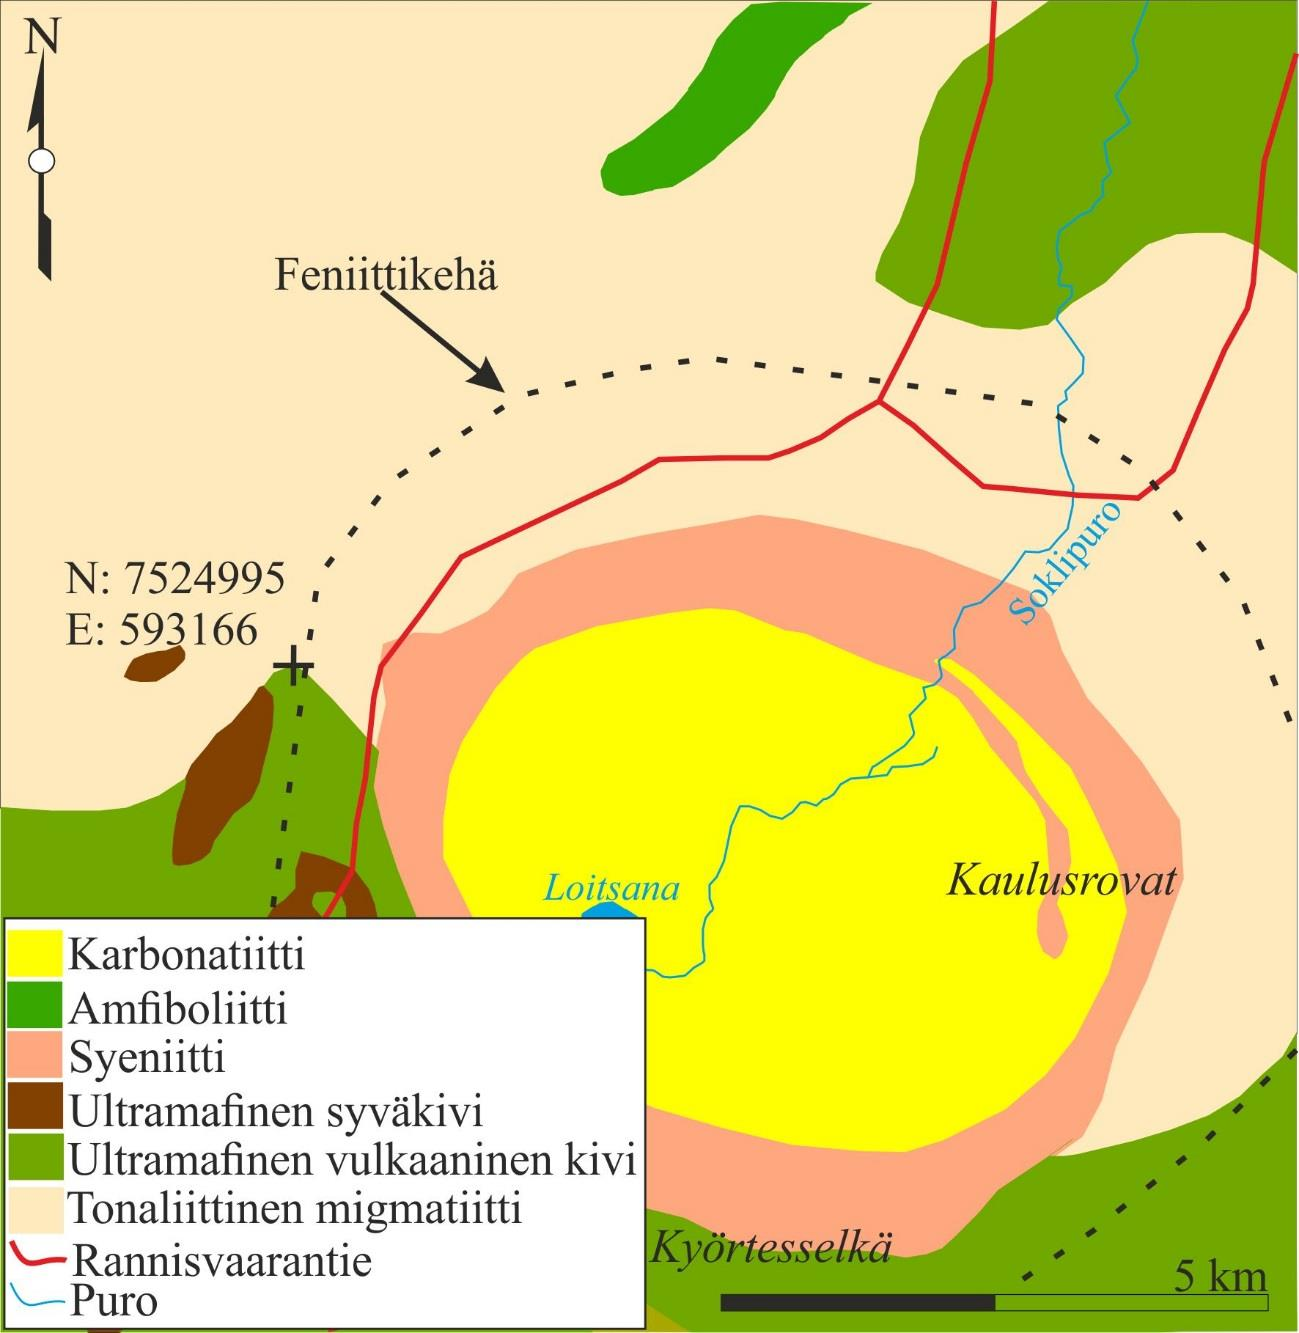 67 Kuva 25. Soklin karbonatiittikompleksi. (ETRS-TM35FIN) (Muokattu; Suomen kallioperä DigiKP 2014, Sarapää et al. 2015).